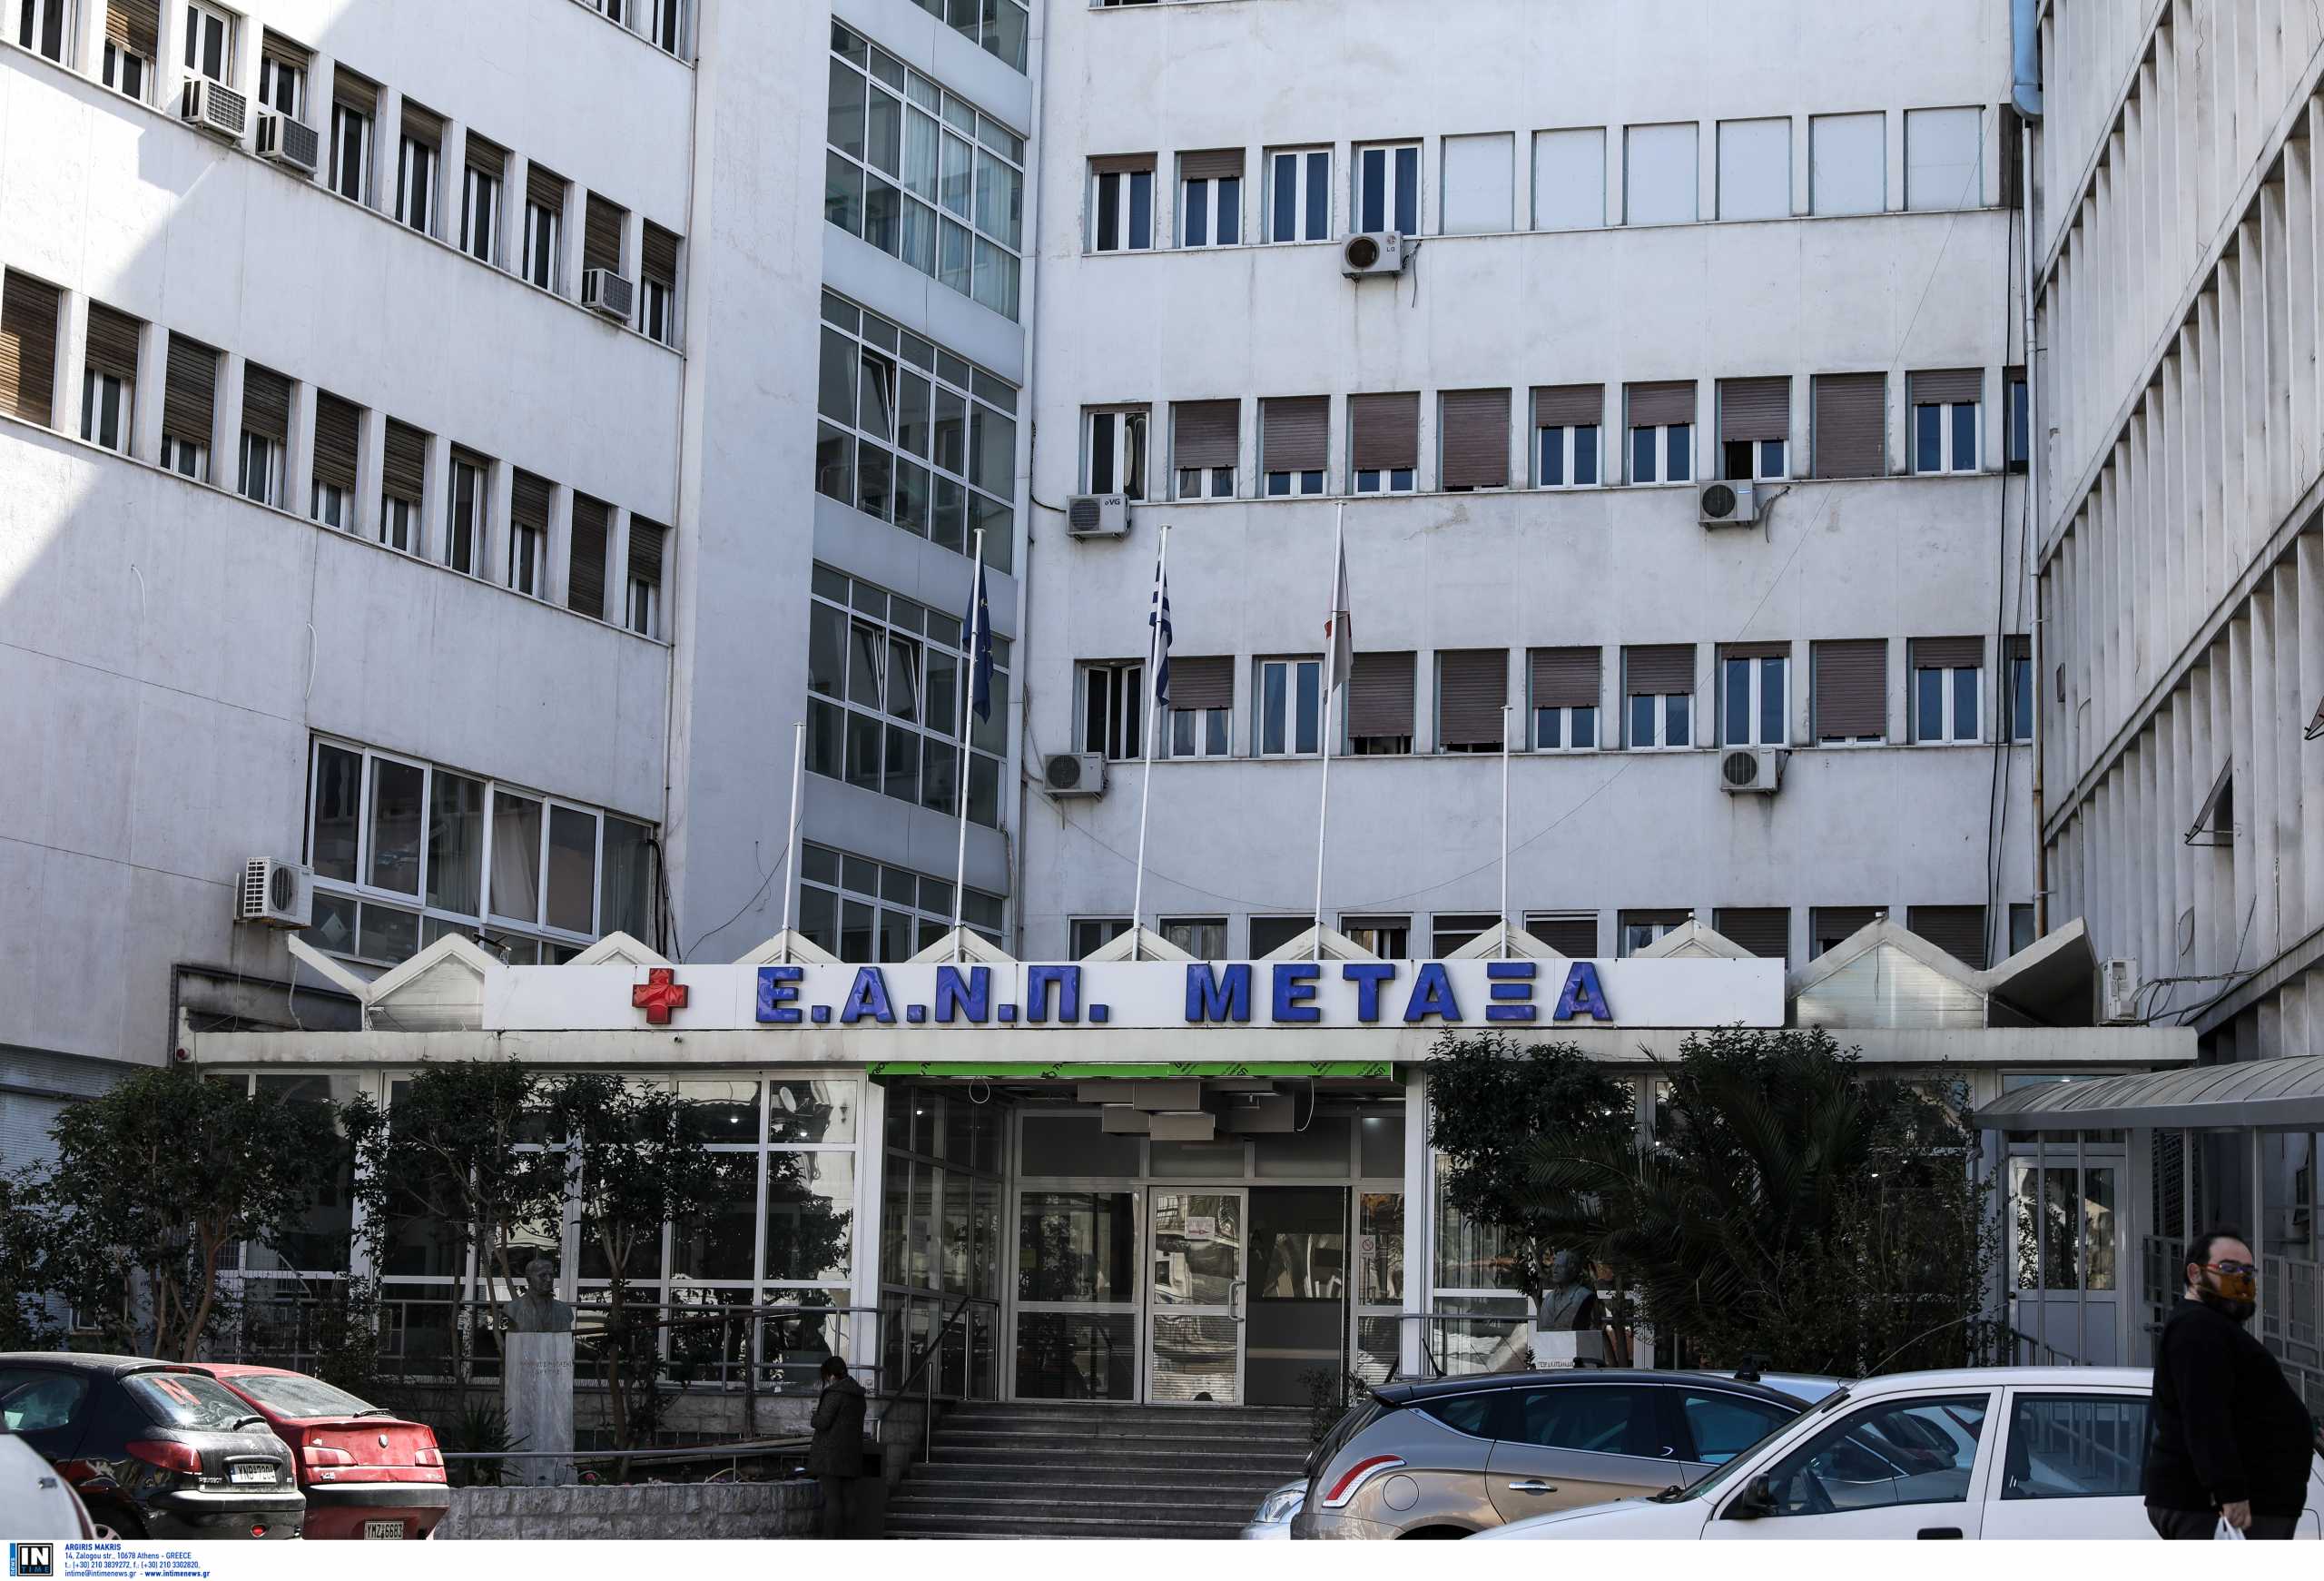 Νοσοκομειακοί γιατροί (ΟΕΝΓΕ): Μπράβοι βουλευτών της ΝΔ «τραμπούκησαν» καρκινοπαθείς στο «Μεταξά»